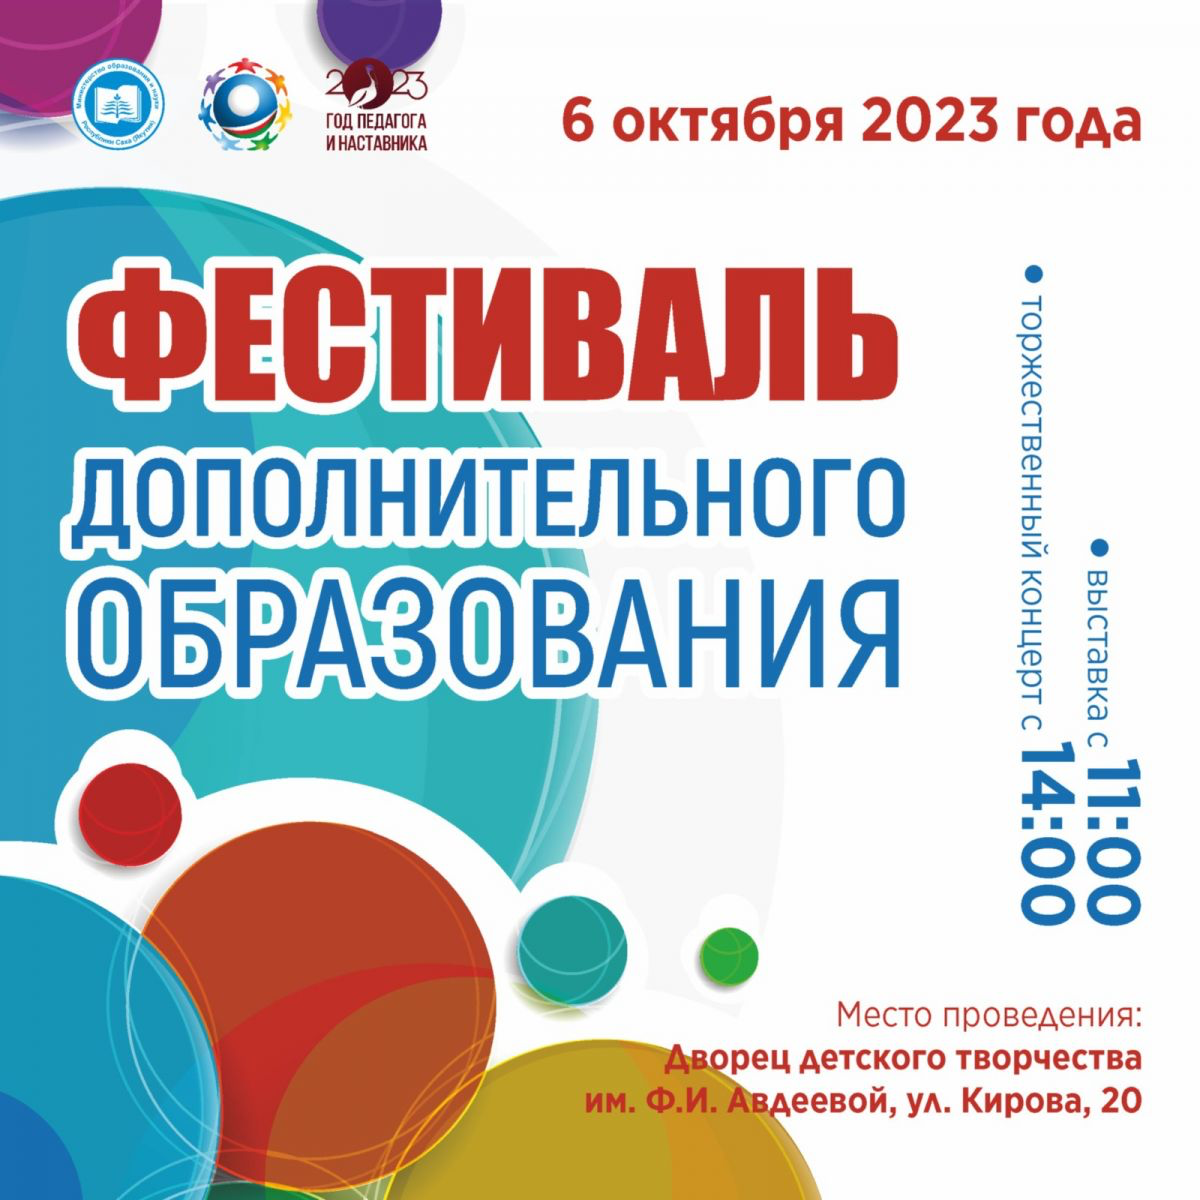 Фестиваль дополнительного образования пройдет во Дворце детского творчества города Якутска